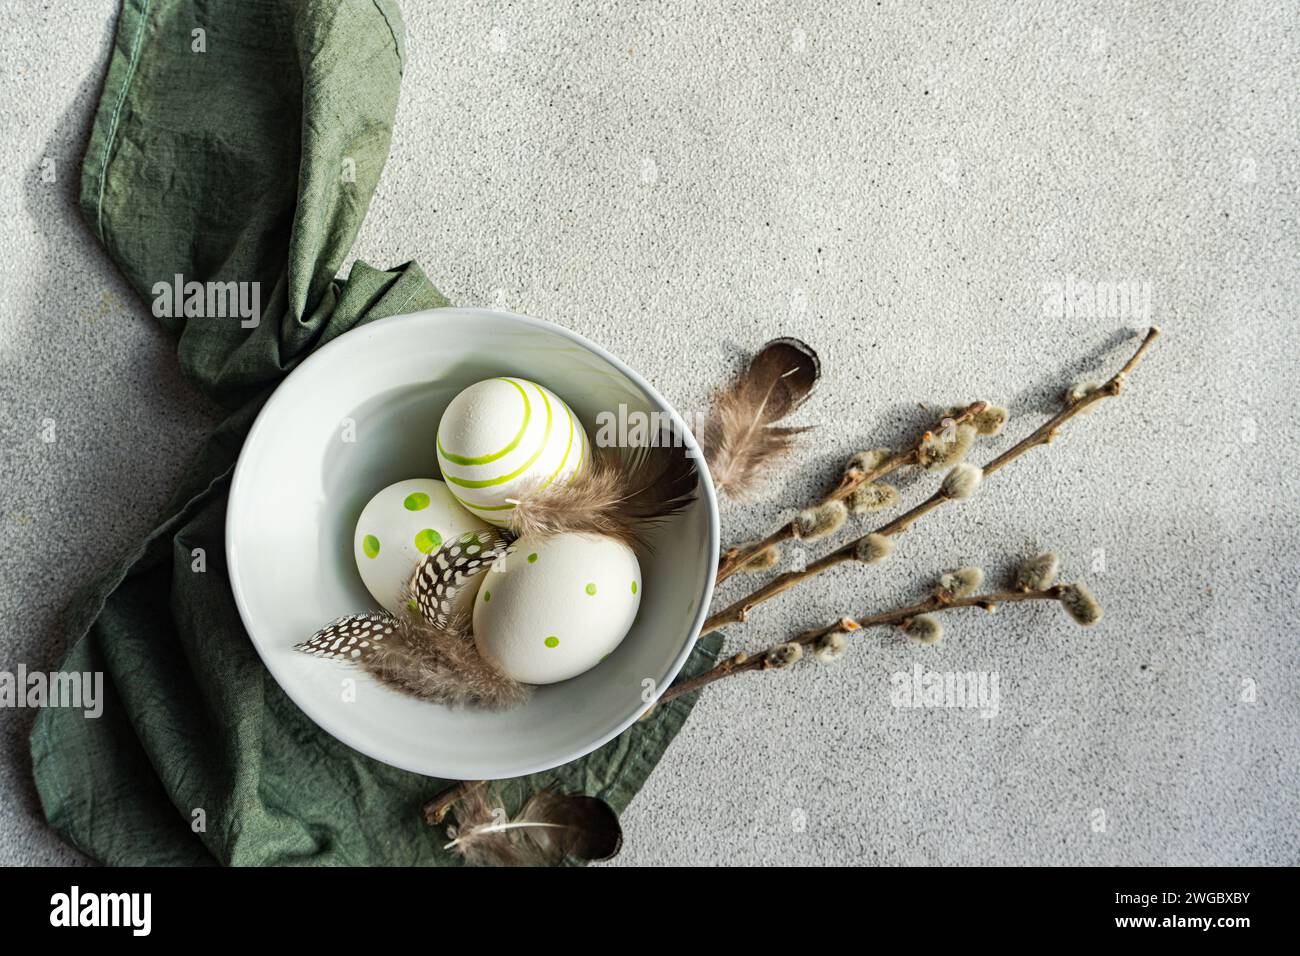 Gros plan de l'arrangement festif de Pâques avec des œufs de Pâques peints, des branches de saule de chatte et des plumes dans un bol à côté d'une serviette Banque D'Images